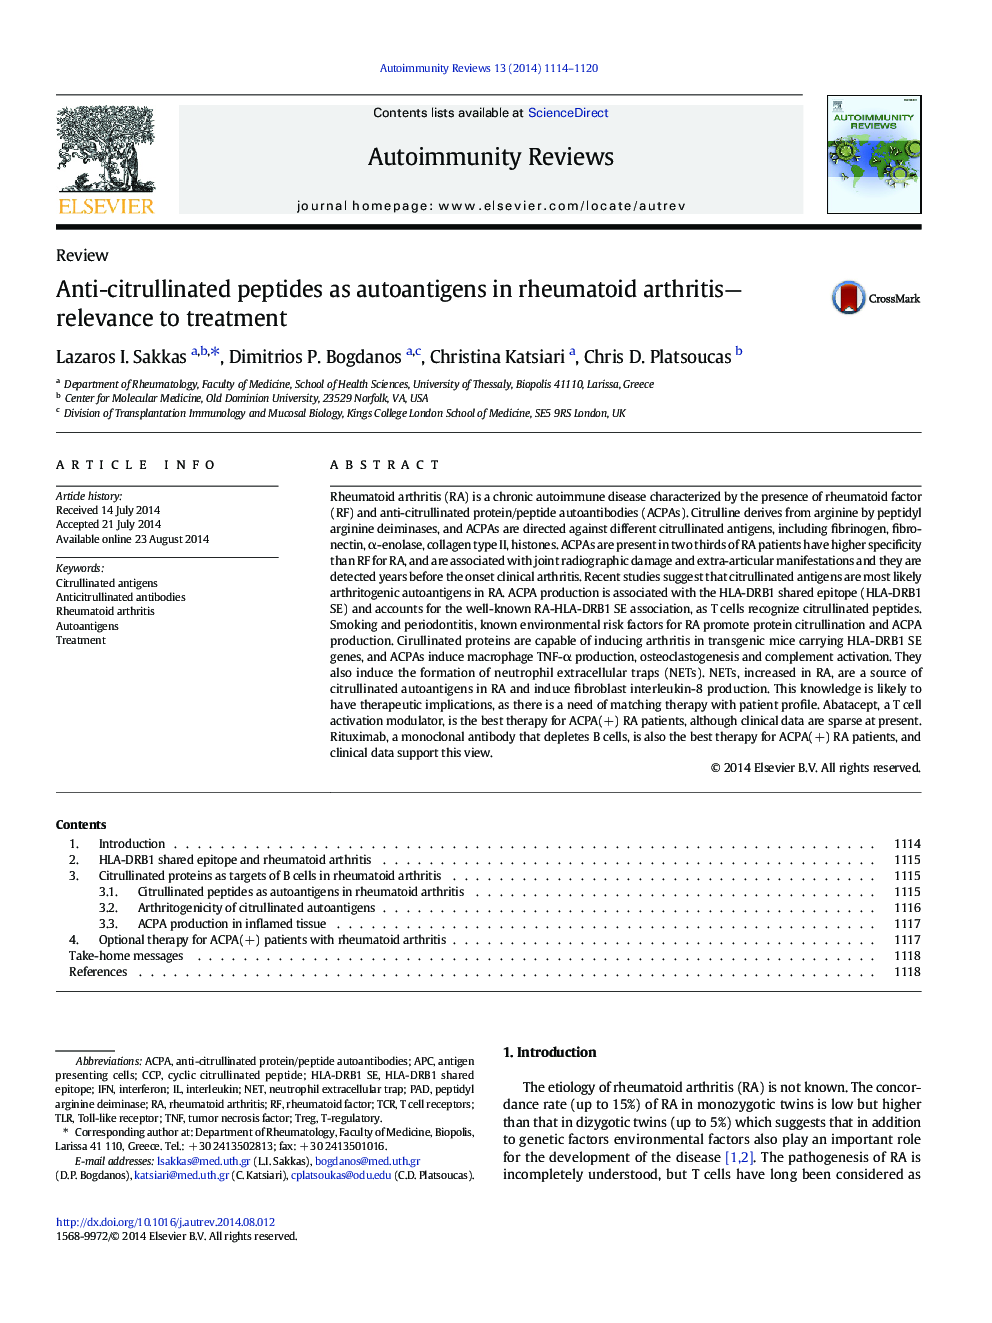 پپتیدهای ضد سیترولین به عنوان آنتی بادیهای خودکار در آرتریت روماتوئید مرتبط با درمان 